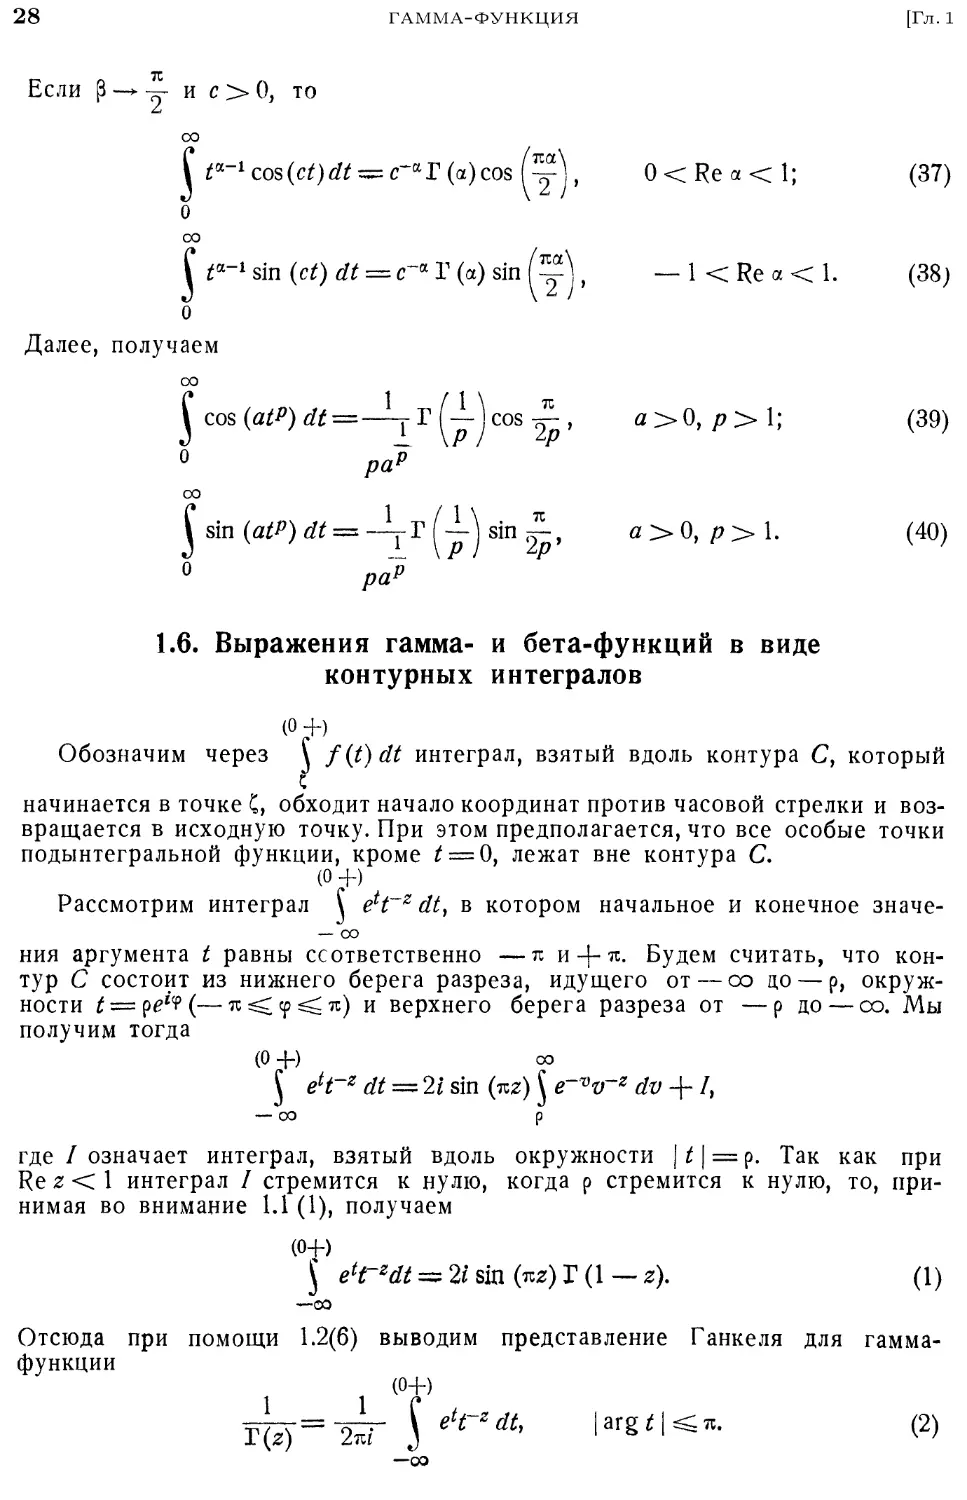 1.6. Выражения гамма- и бета-функций в виде контурных интегралов